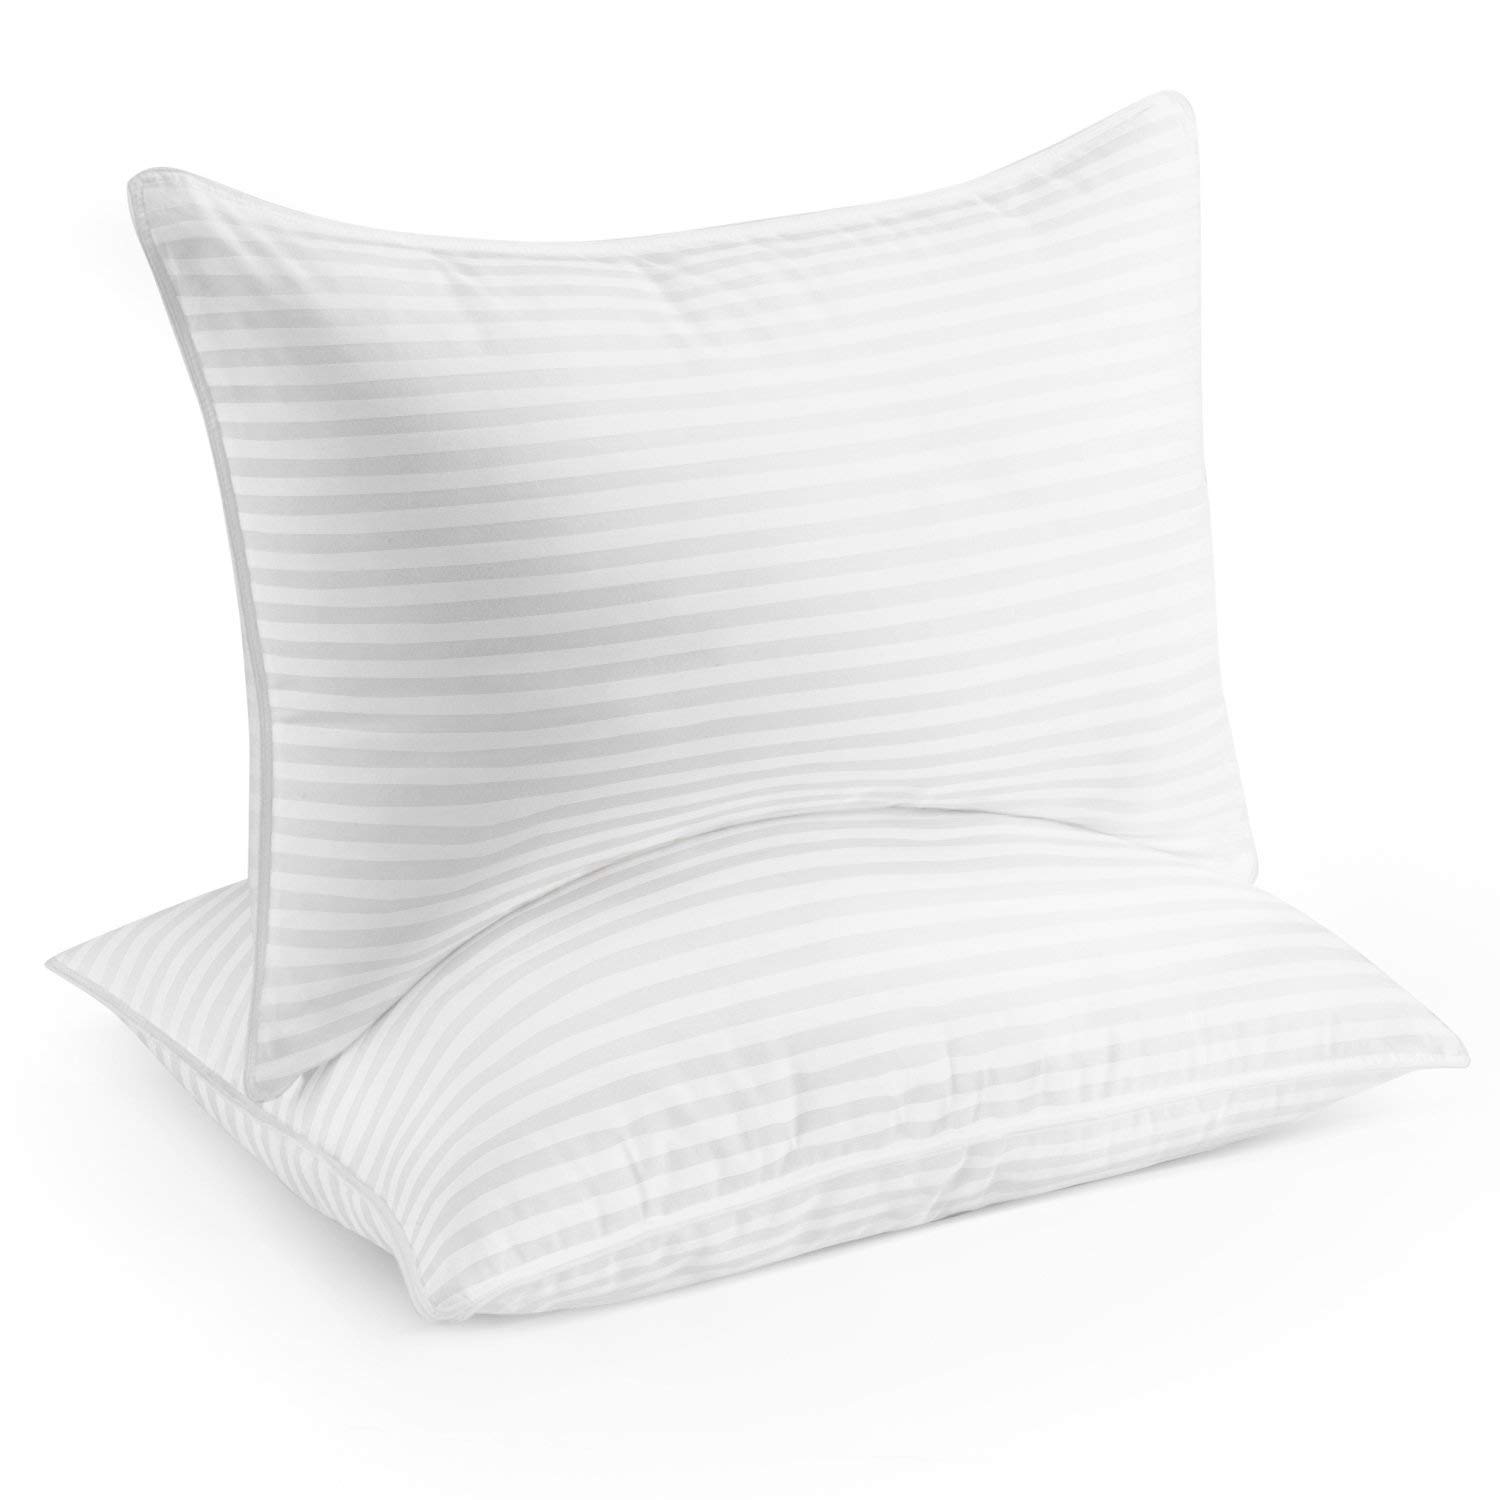 v shaped pillow the range